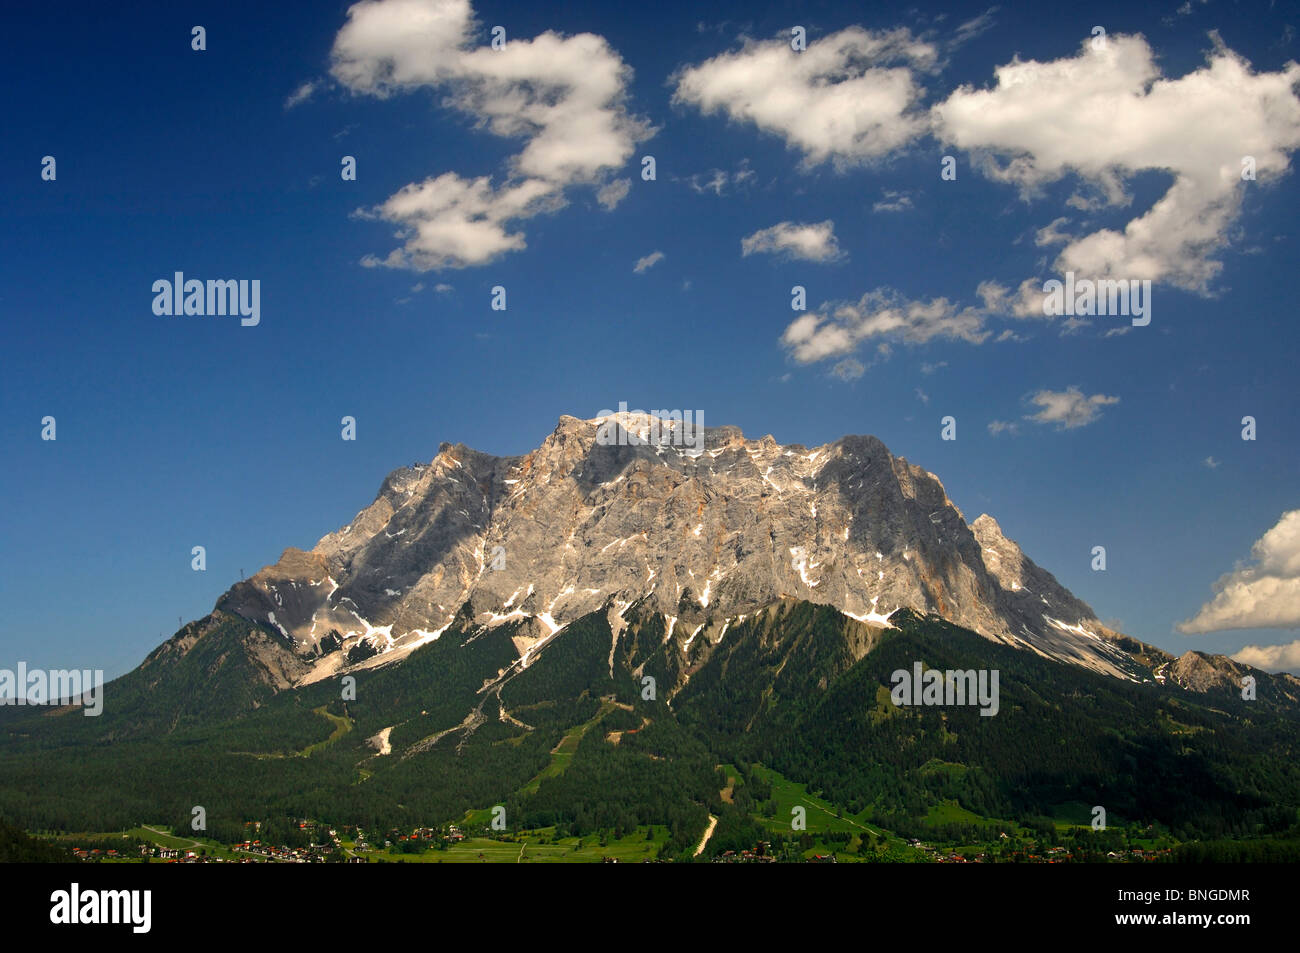 Mt. Zugspitze under a blue summer sky, Ehrwald, Wetterstein mountain range, Tyrol, Austria Stock Photo